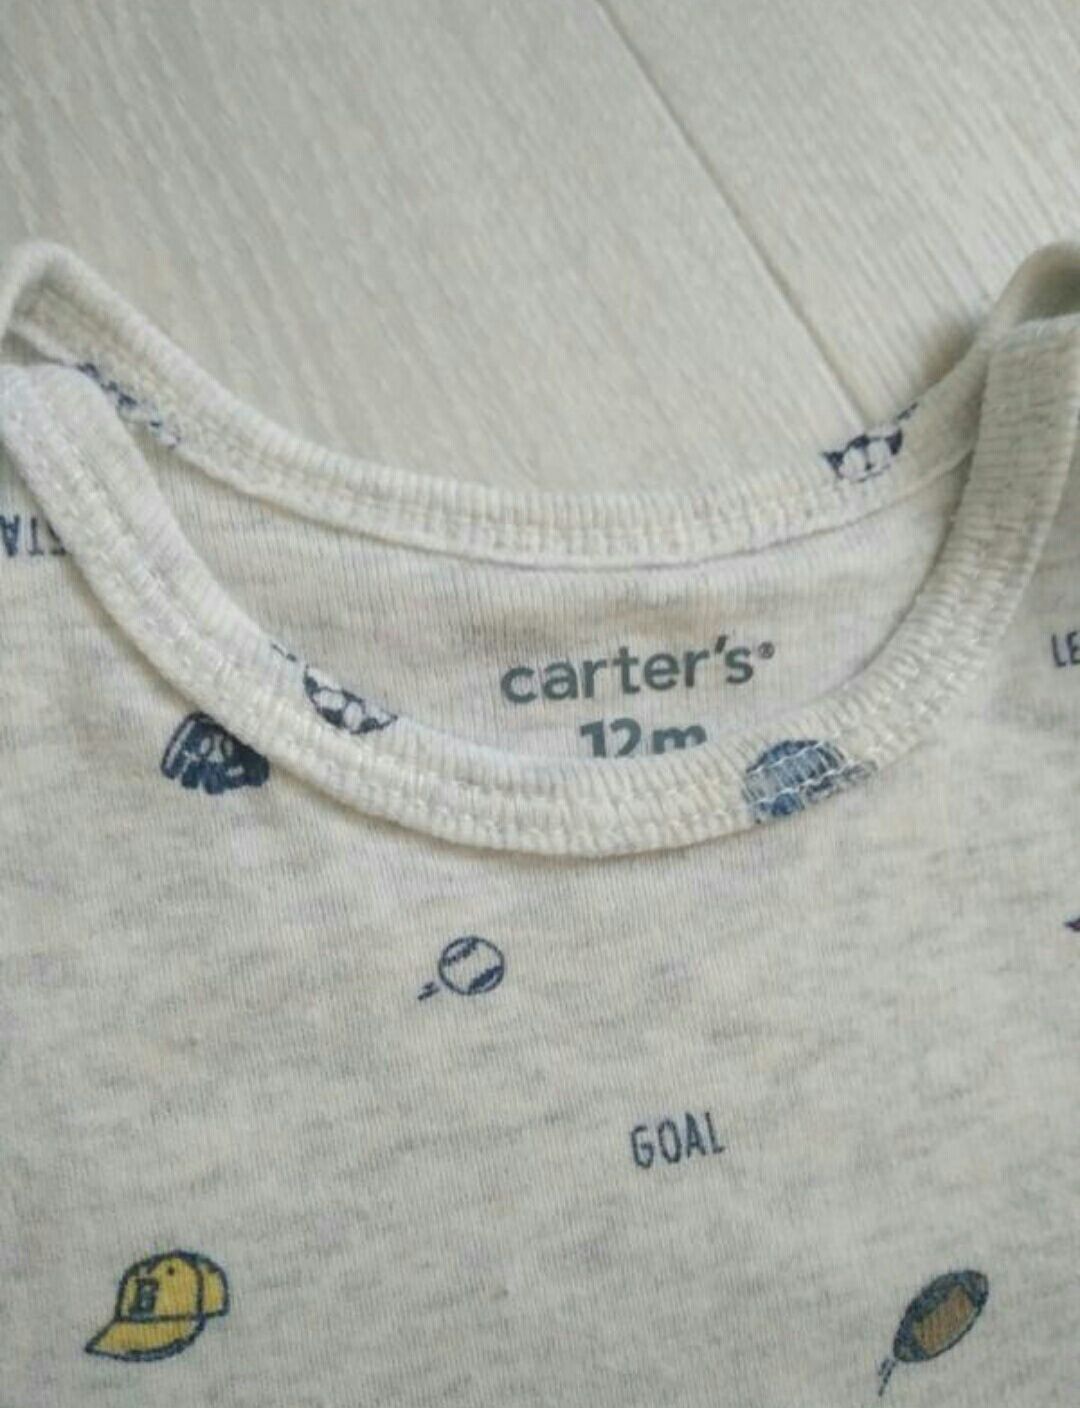 Комплект одежды Картерс carter's на 9- 12 мес. Бейсбол "весёлые попки"